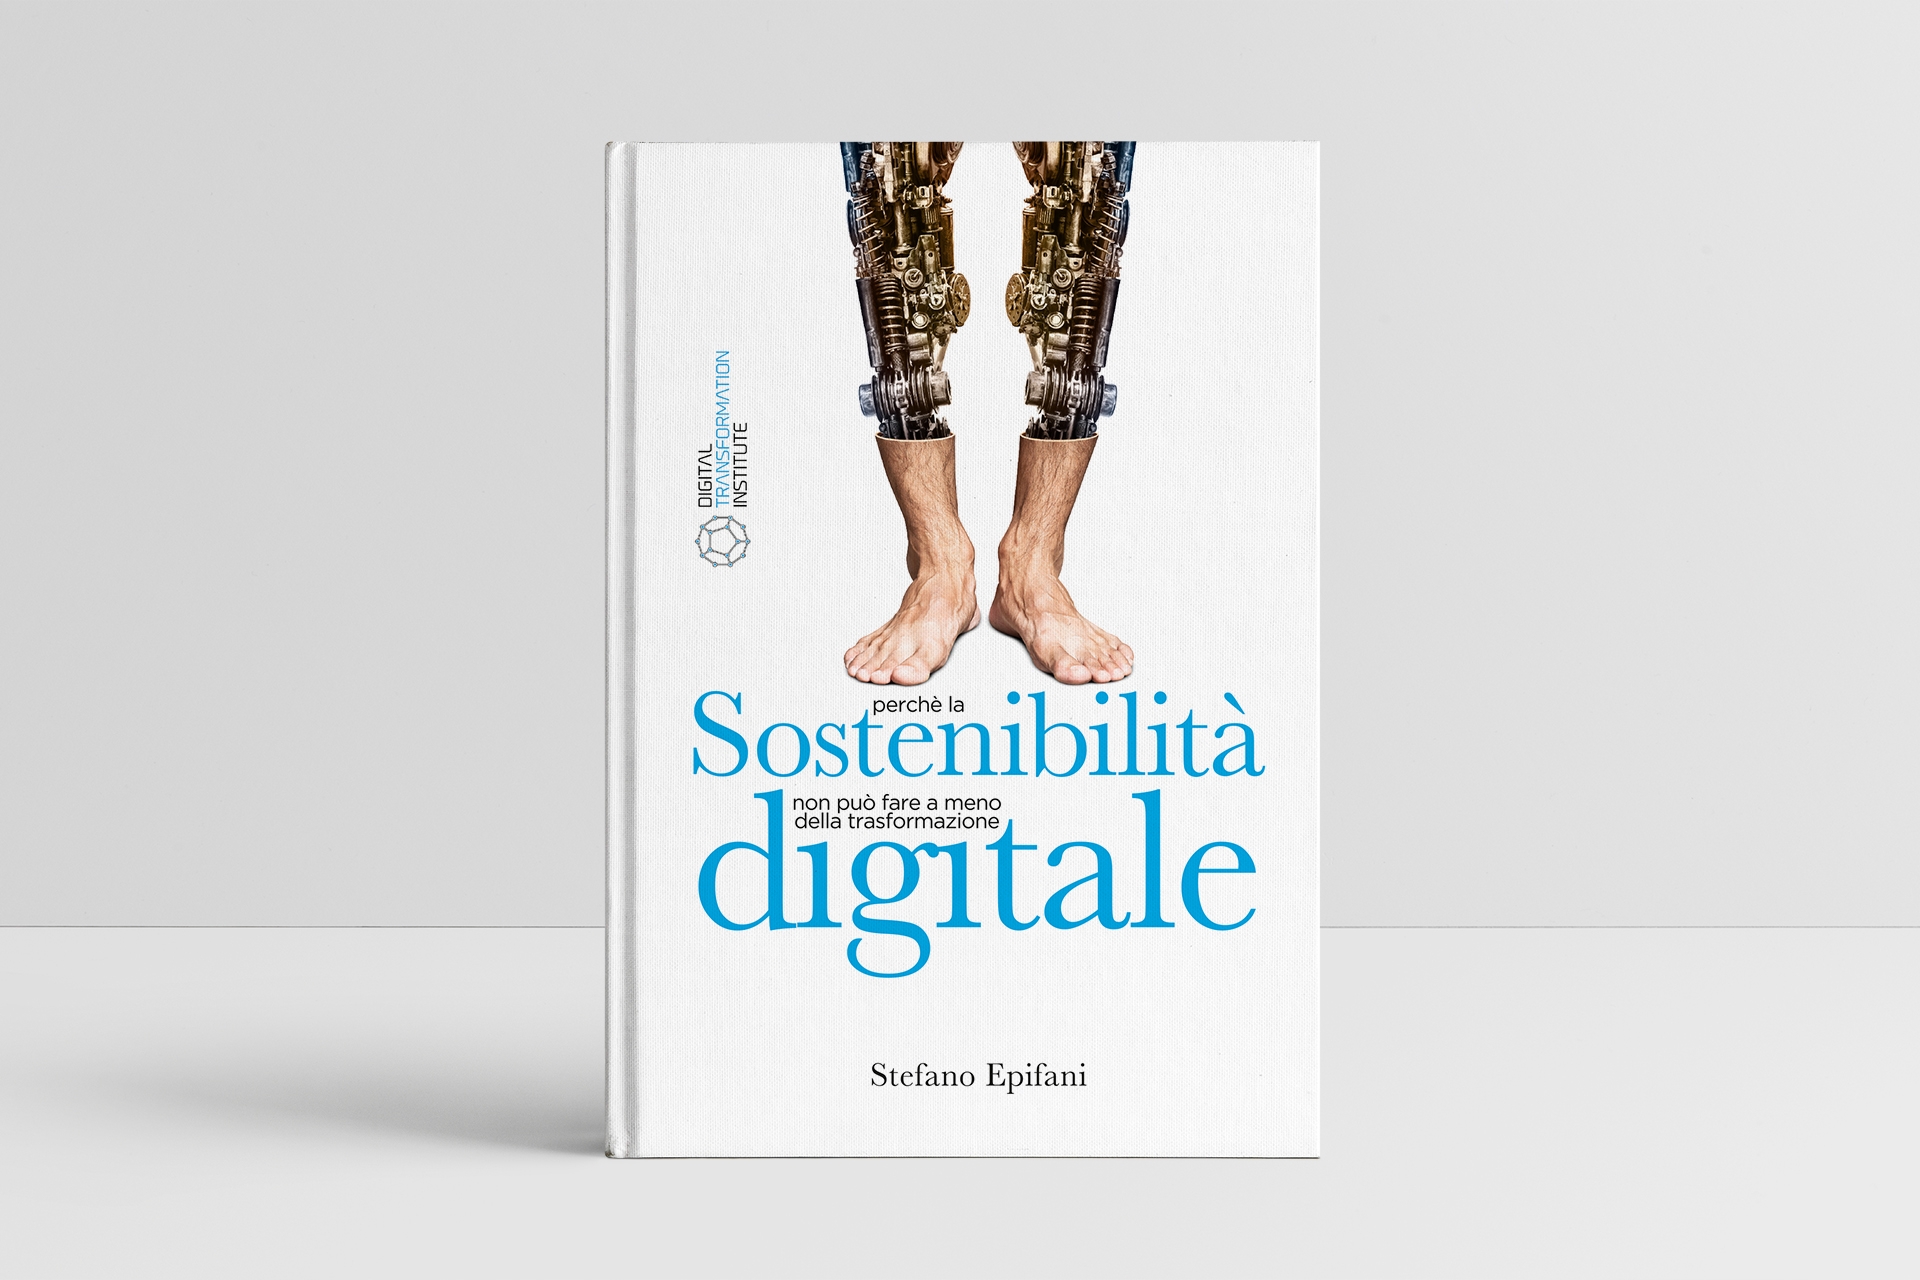 Stefano Epifani: el libro "Sostenibilidad digital: por qué la sostenibilidad no puede prescindir de la transformación digital" de Stefano Epifani